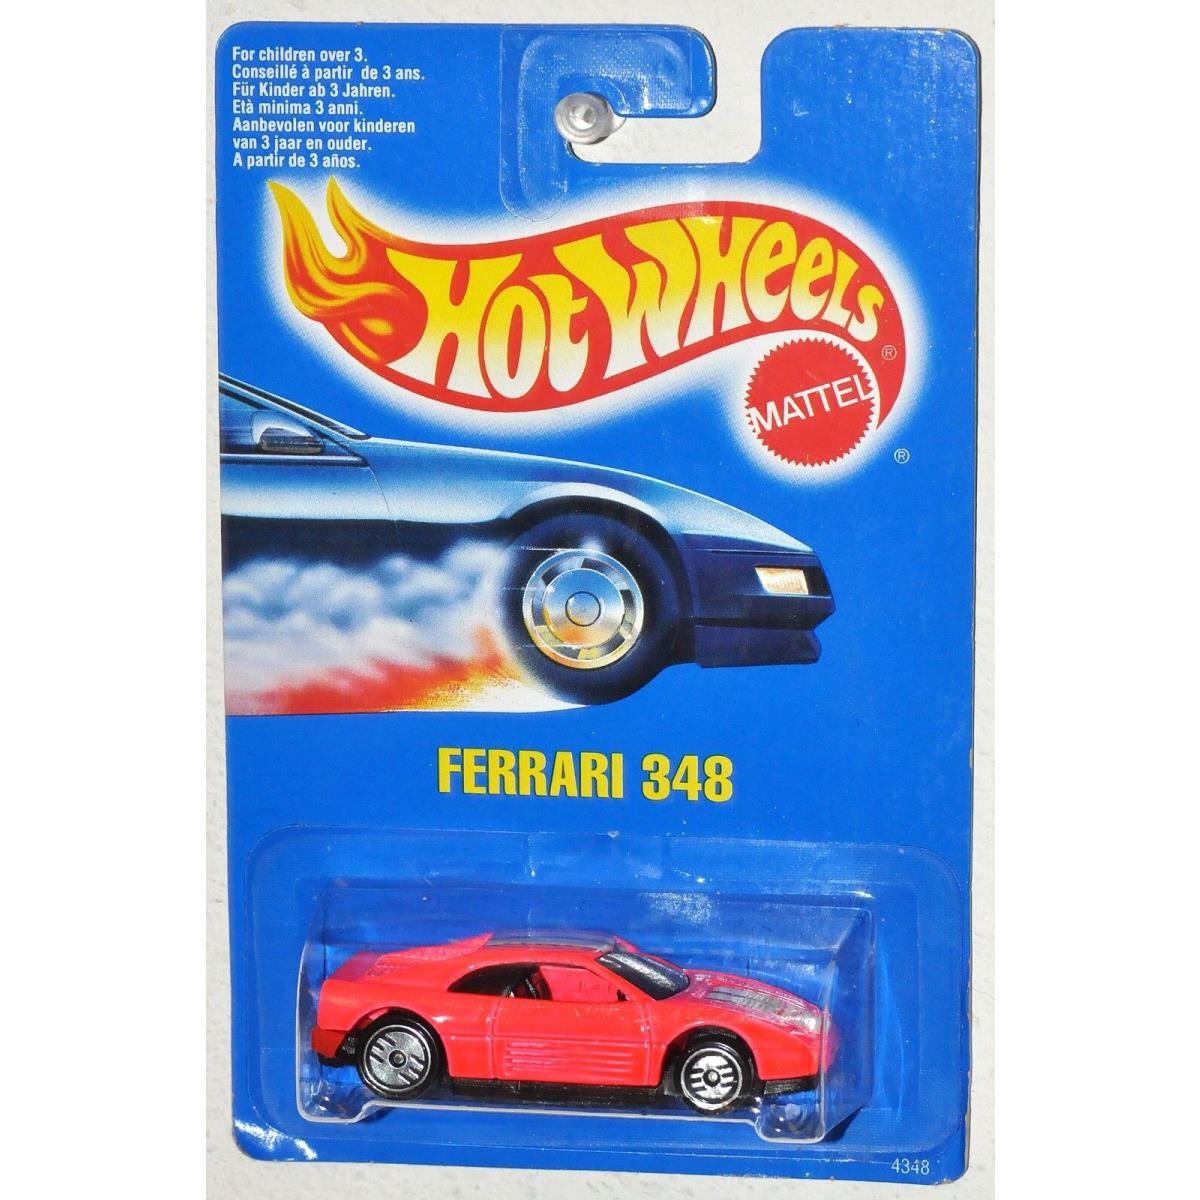 Hot Wheels 1990 Hot Pink Ferrari 348 Blue Card Moc Vhtf UH Wheels No Collector